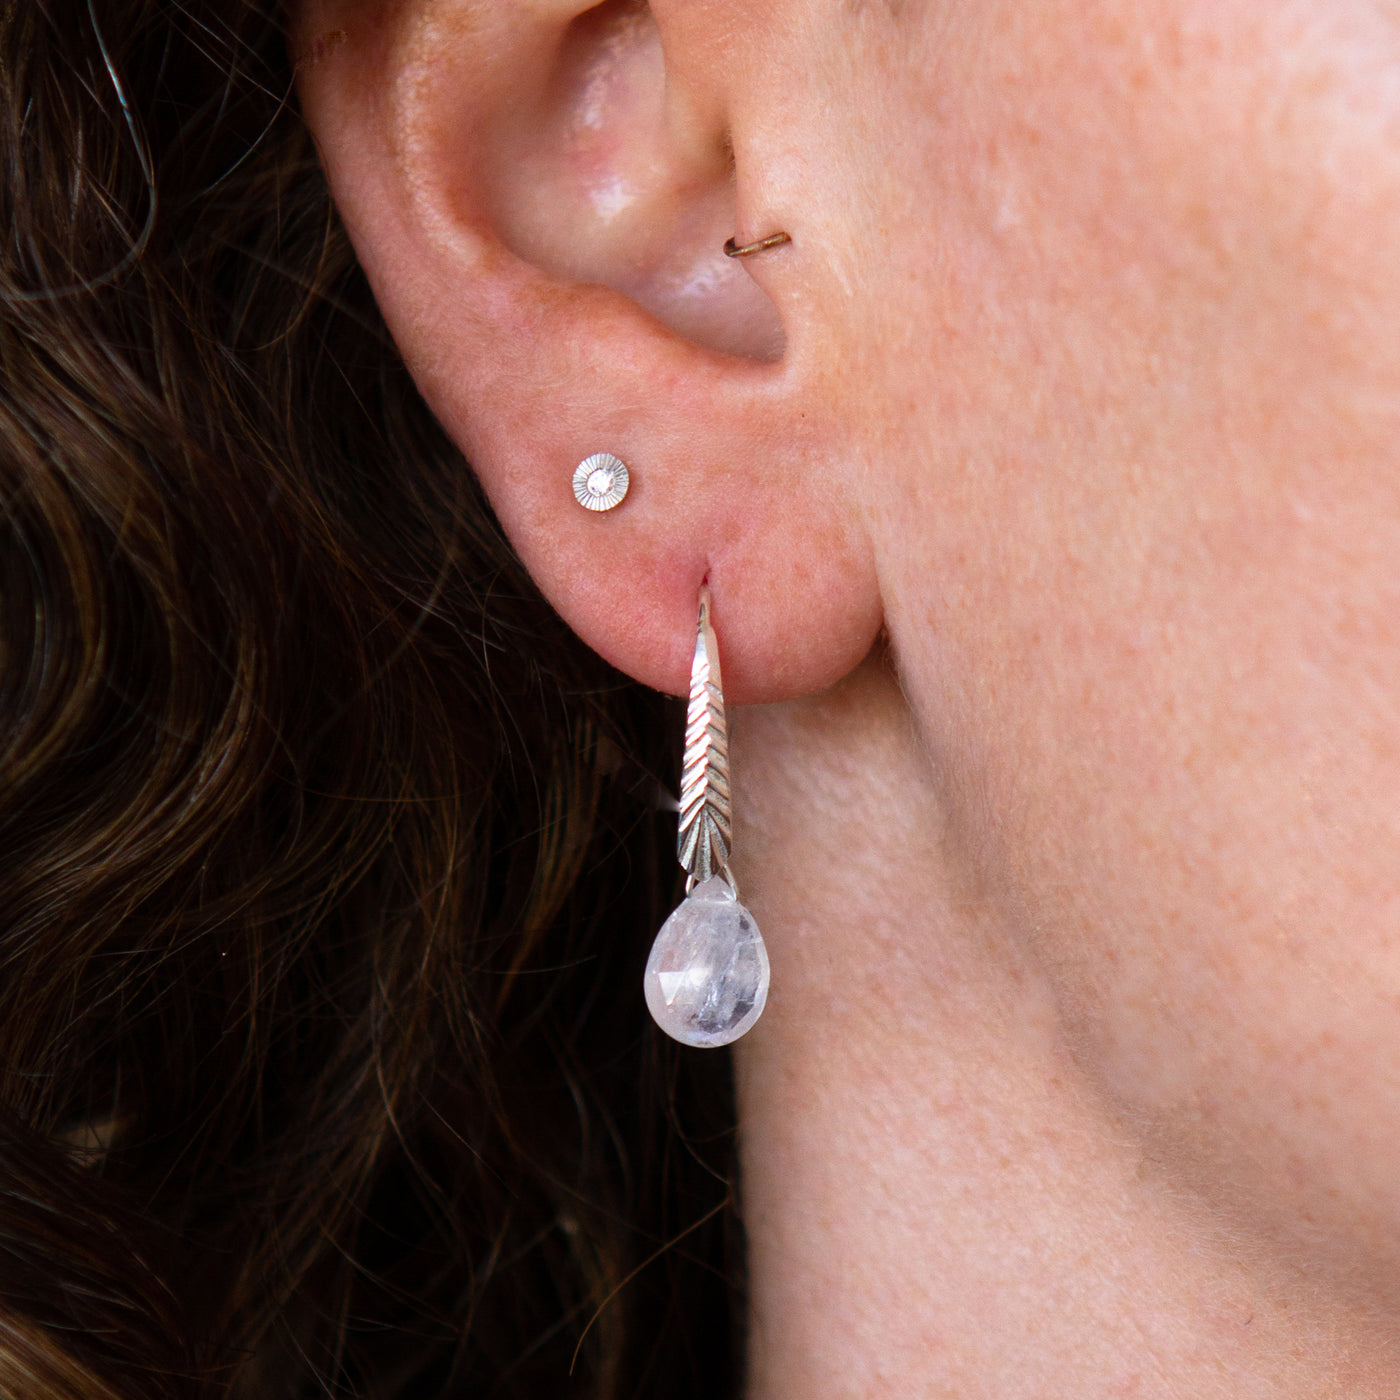 sterling silver Herringbone dangle earrings with pear shape moonstone drops on an ear